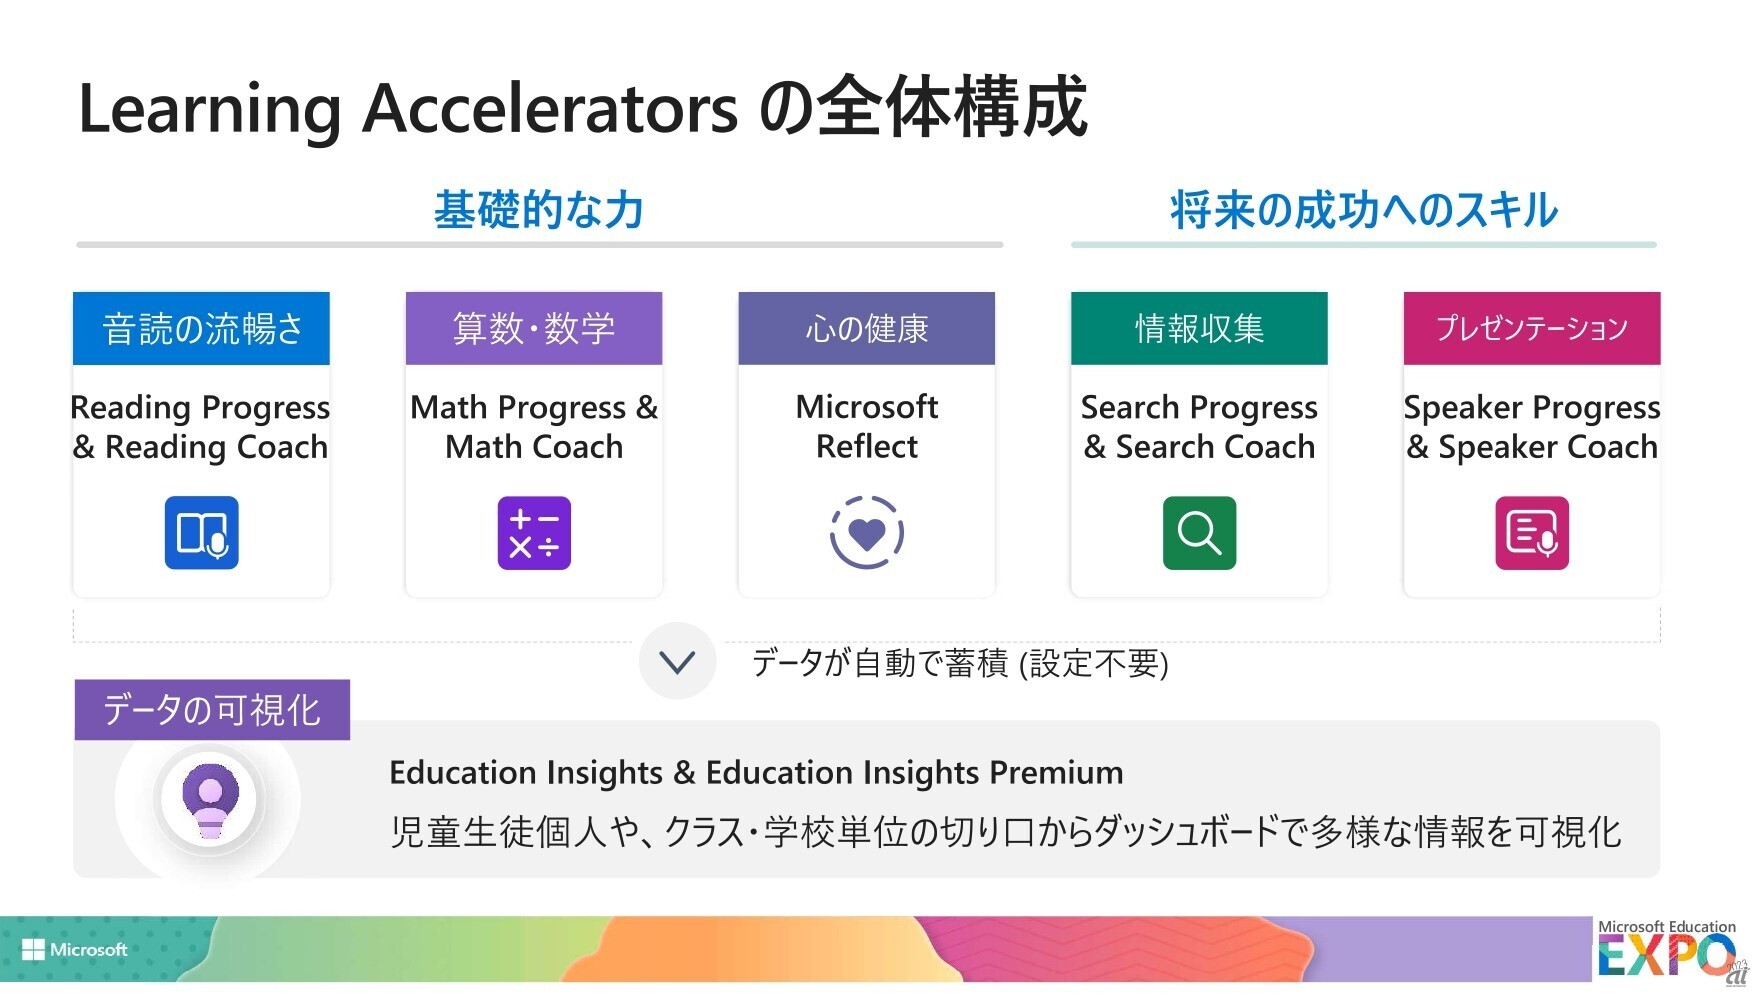 Learning Acceleratorsを構成する6つのアプリケーション